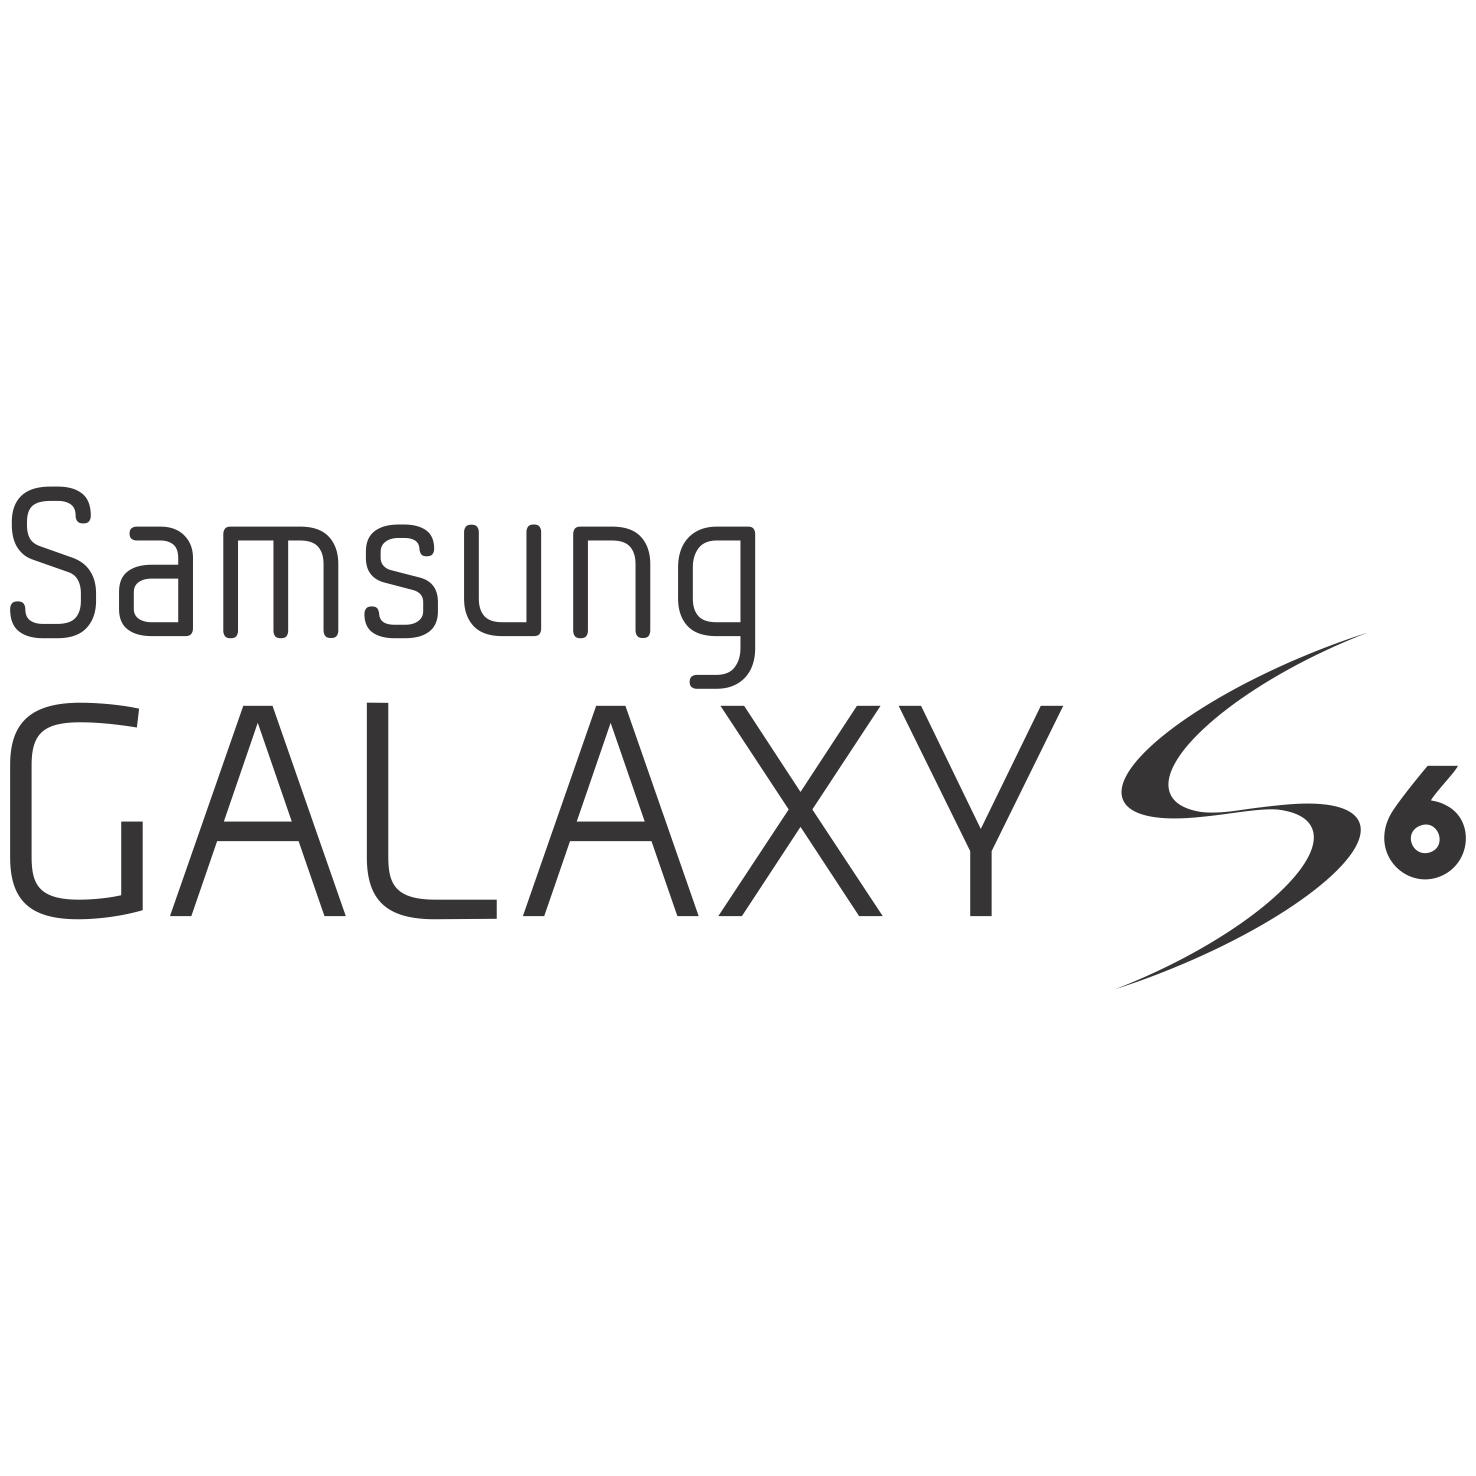 Descargar Logo Vectorizado samsung galaxy s6 Gratis